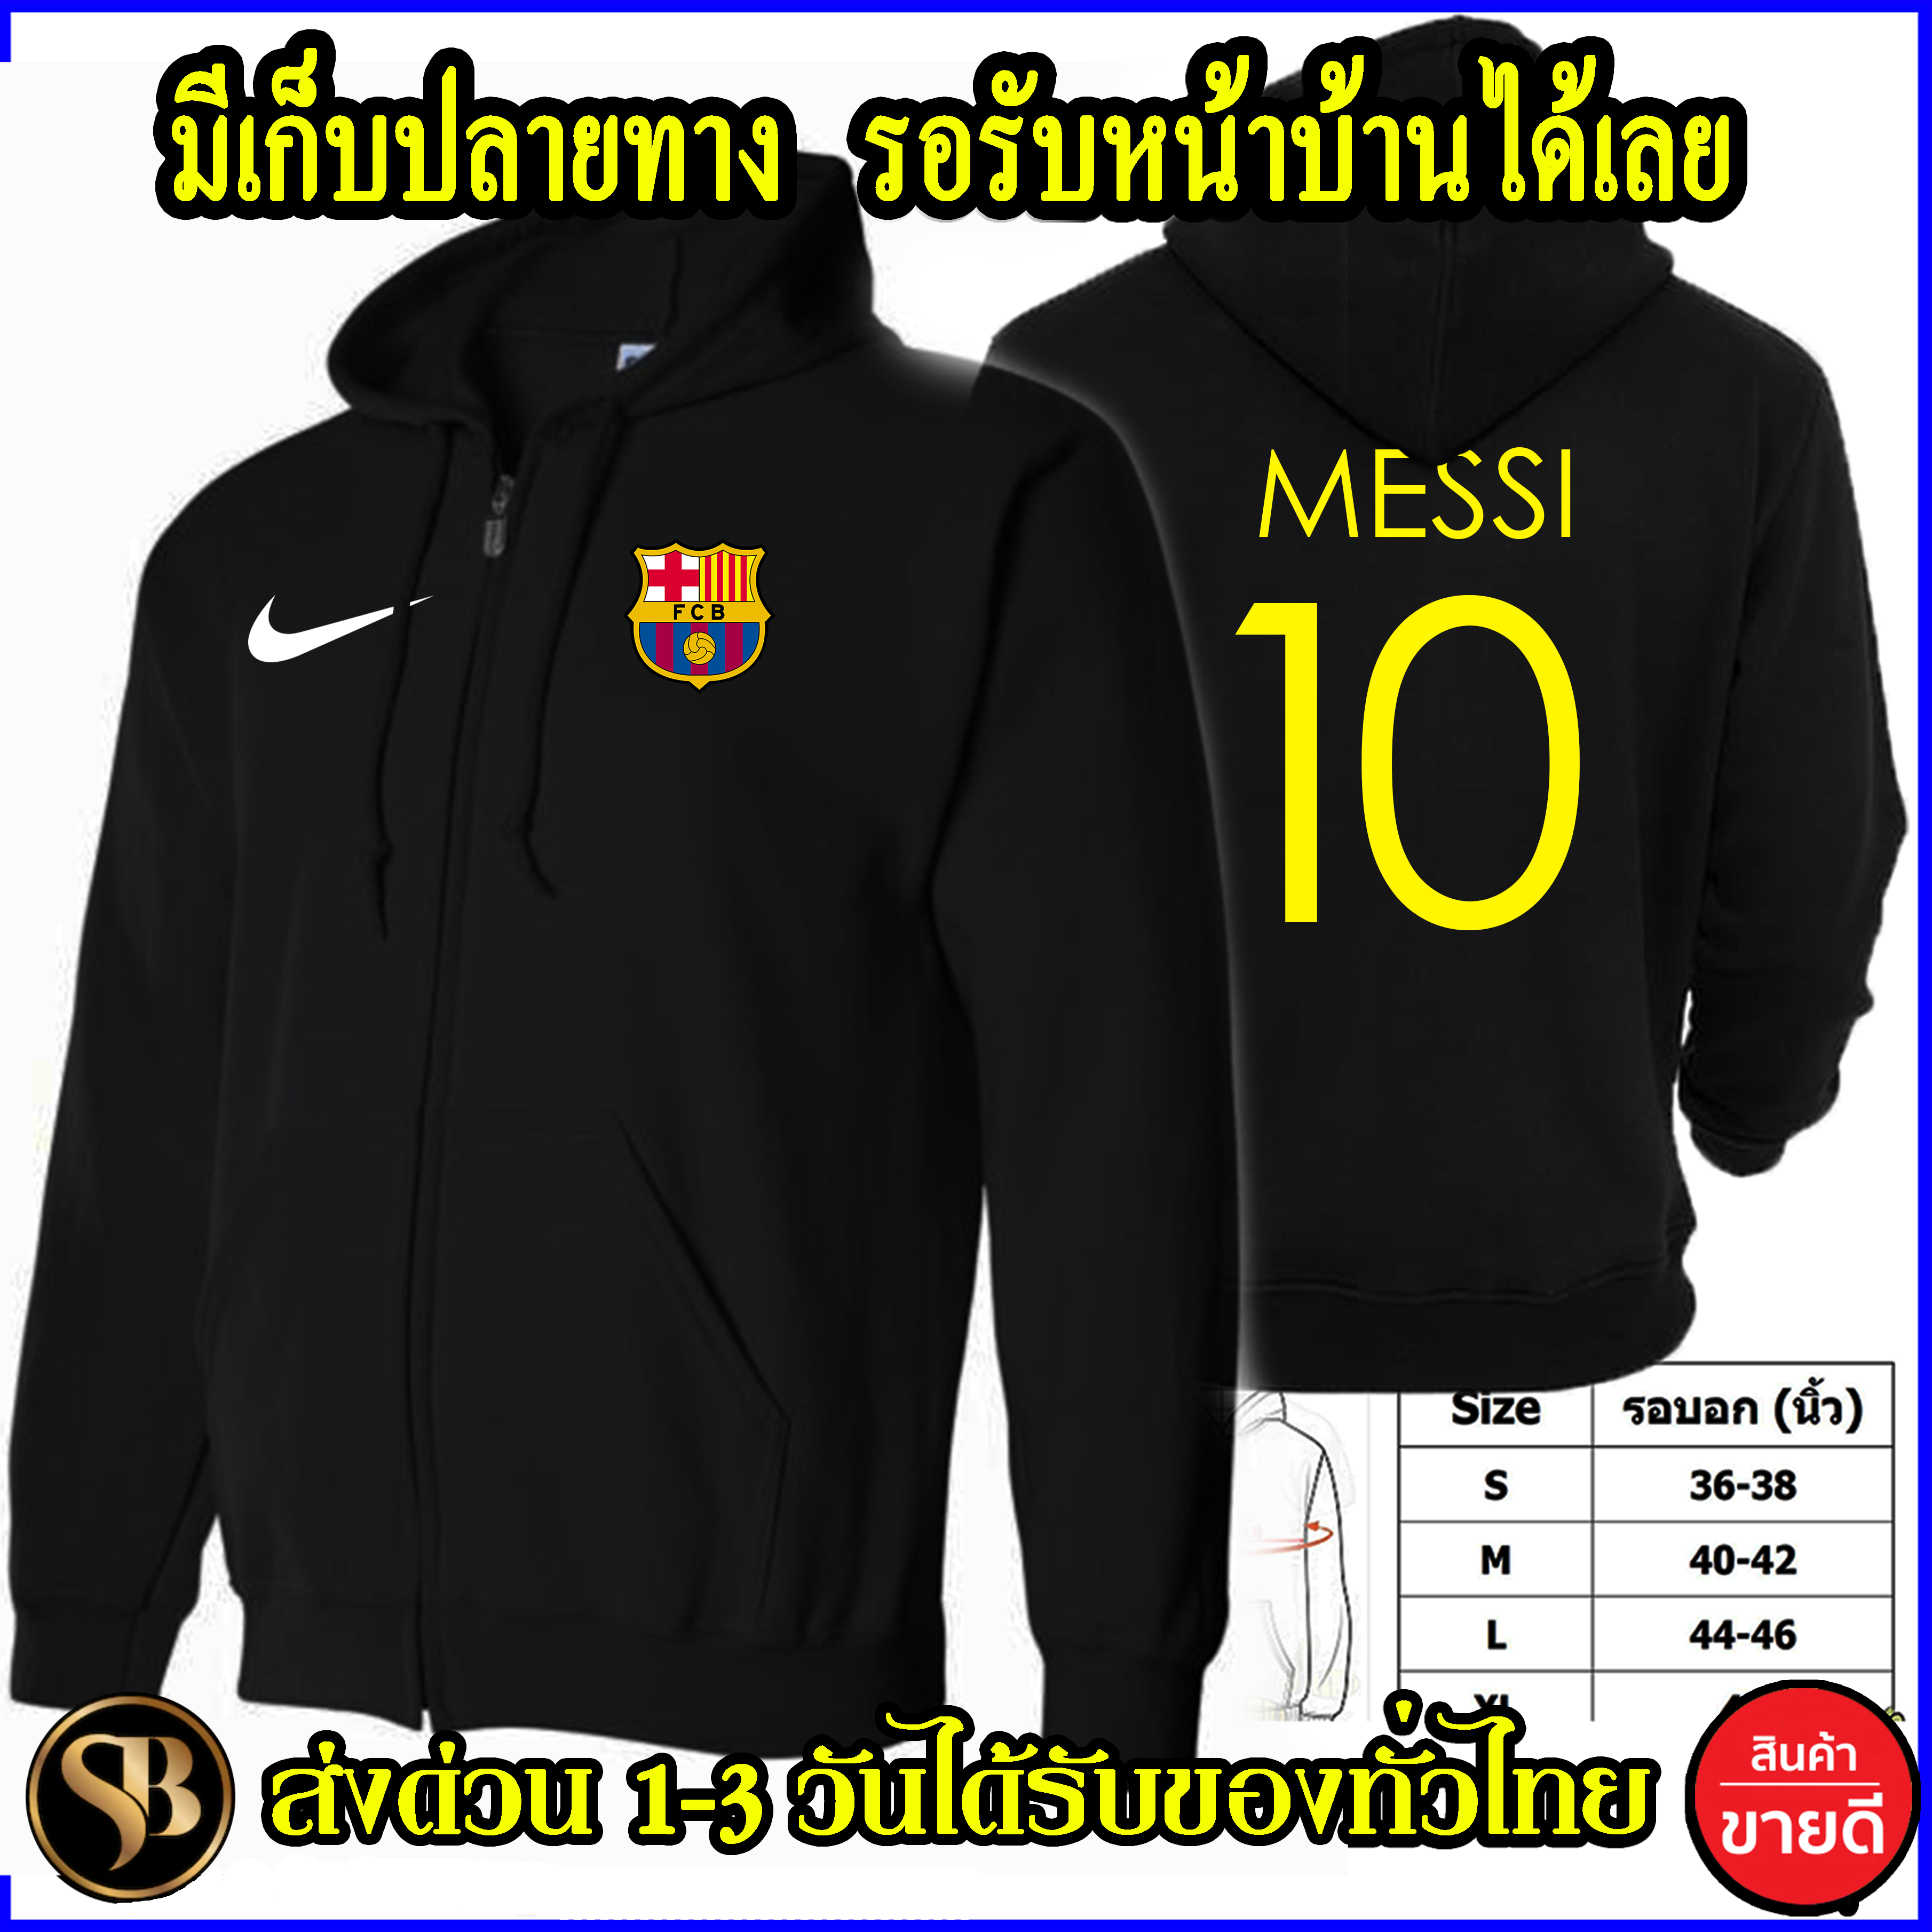 บาร์เซโลนา เสื้อฮู้ด Messi งาน H&M โลโก้สีสด HOODIE แบบซิป สวม สกรีนแบบเฟล็ก PU สวยสดไม่แตกไม่ลอก ส่งด่วนทั่วไทย